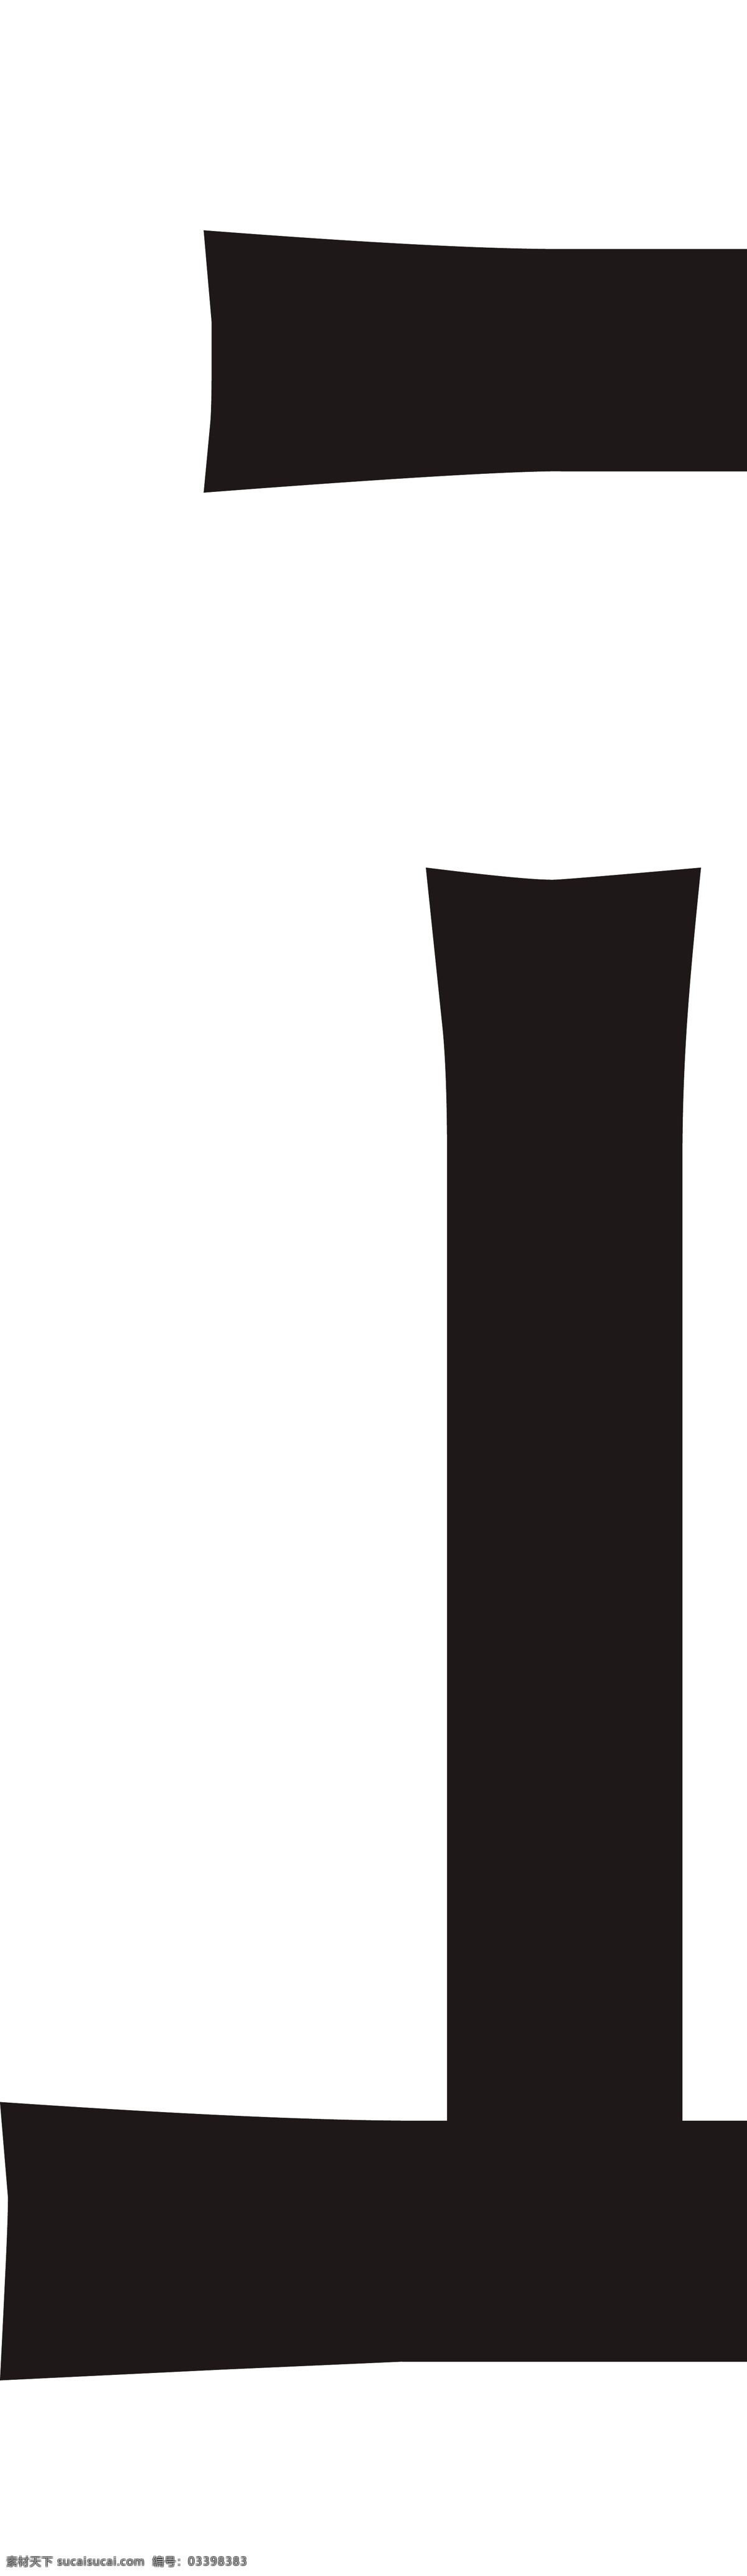 红酒瓶贴标签 金银黑系列 红酒瓶标贴 葡萄酒瓶 包装设计 酒标不干胶 品名 logo 展翅 鹦鹉 三系列金色 银色 黑色 英文标识设计 名片卡片 矢量